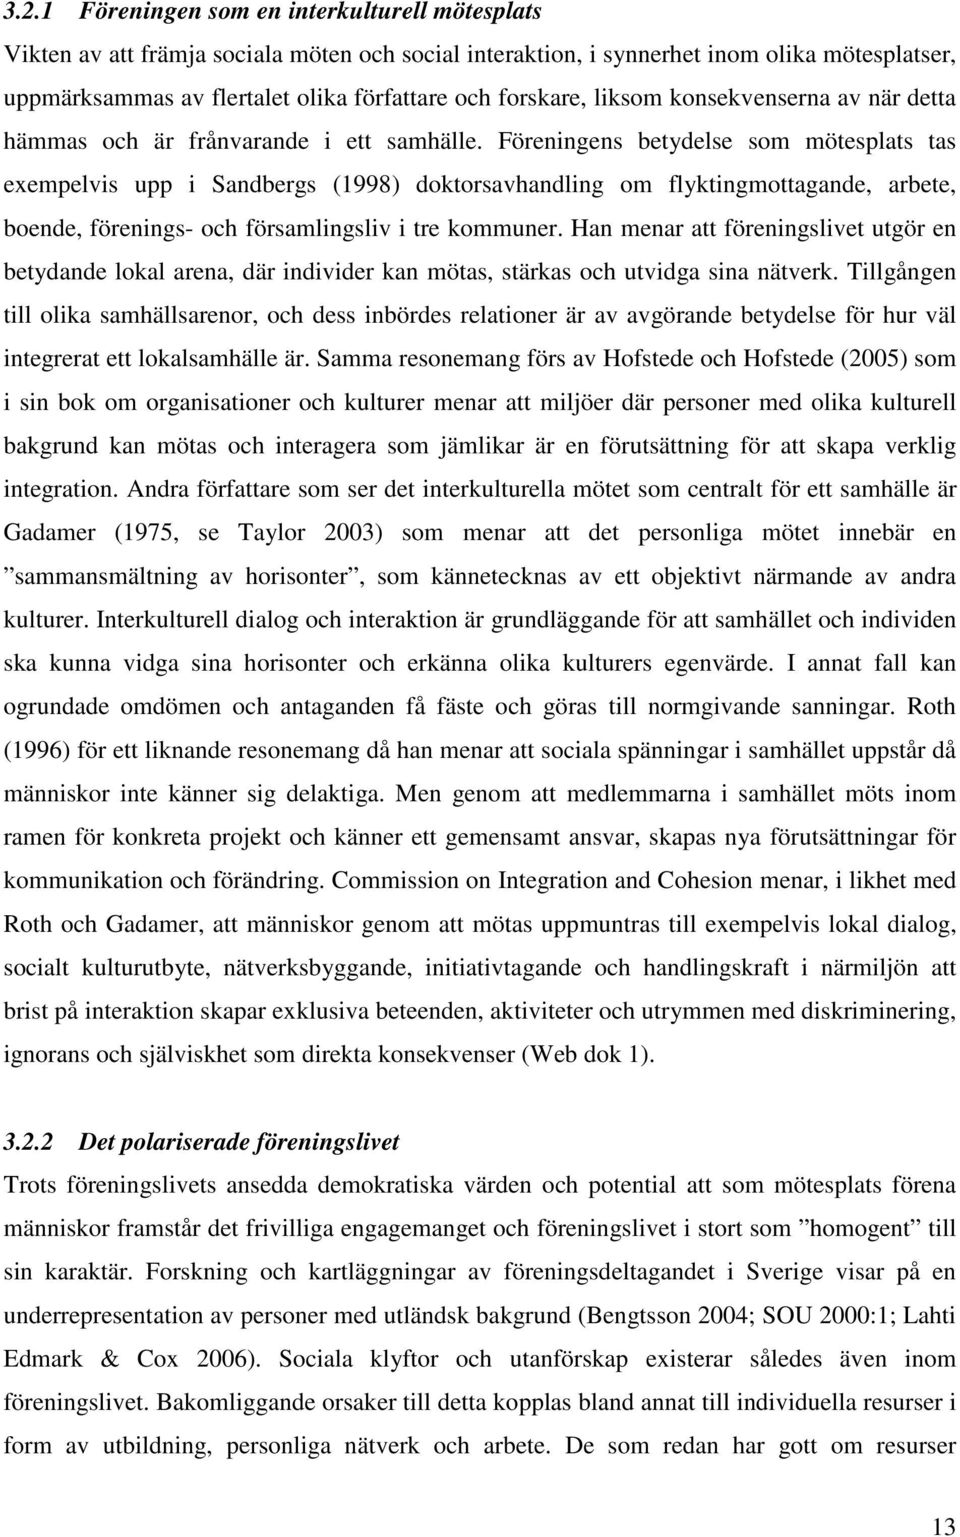 Föreningens betydelse som mötesplats tas exempelvis upp i Sandbergs (1998) doktorsavhandling om flyktingmottagande, arbete, boende, förenings- och församlingsliv i tre kommuner.